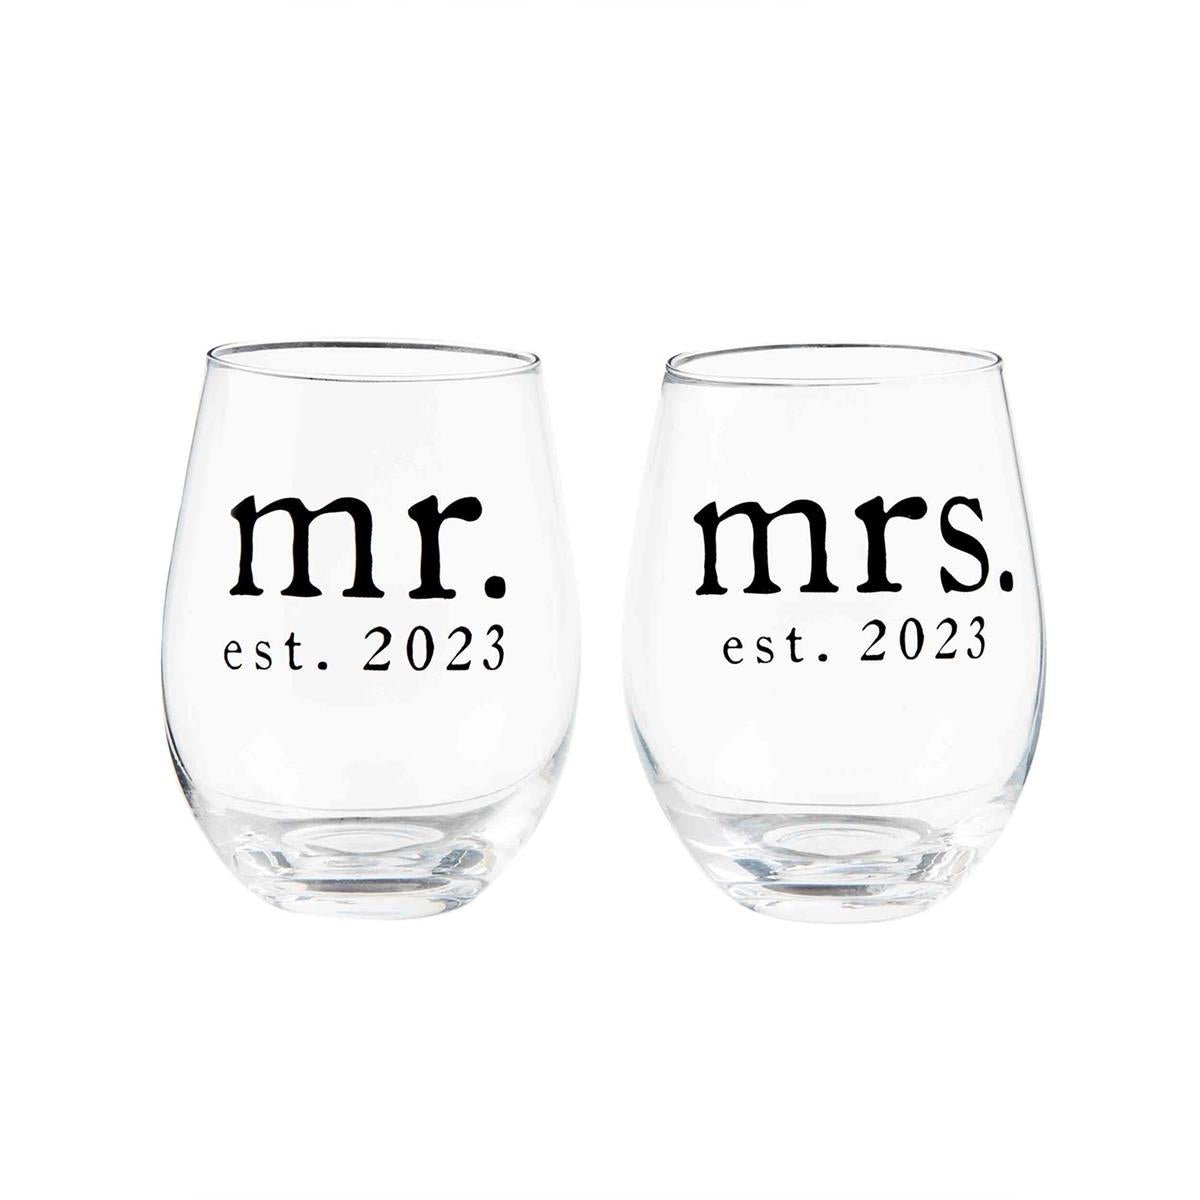 MR. & MRS. WINE GLASS SET